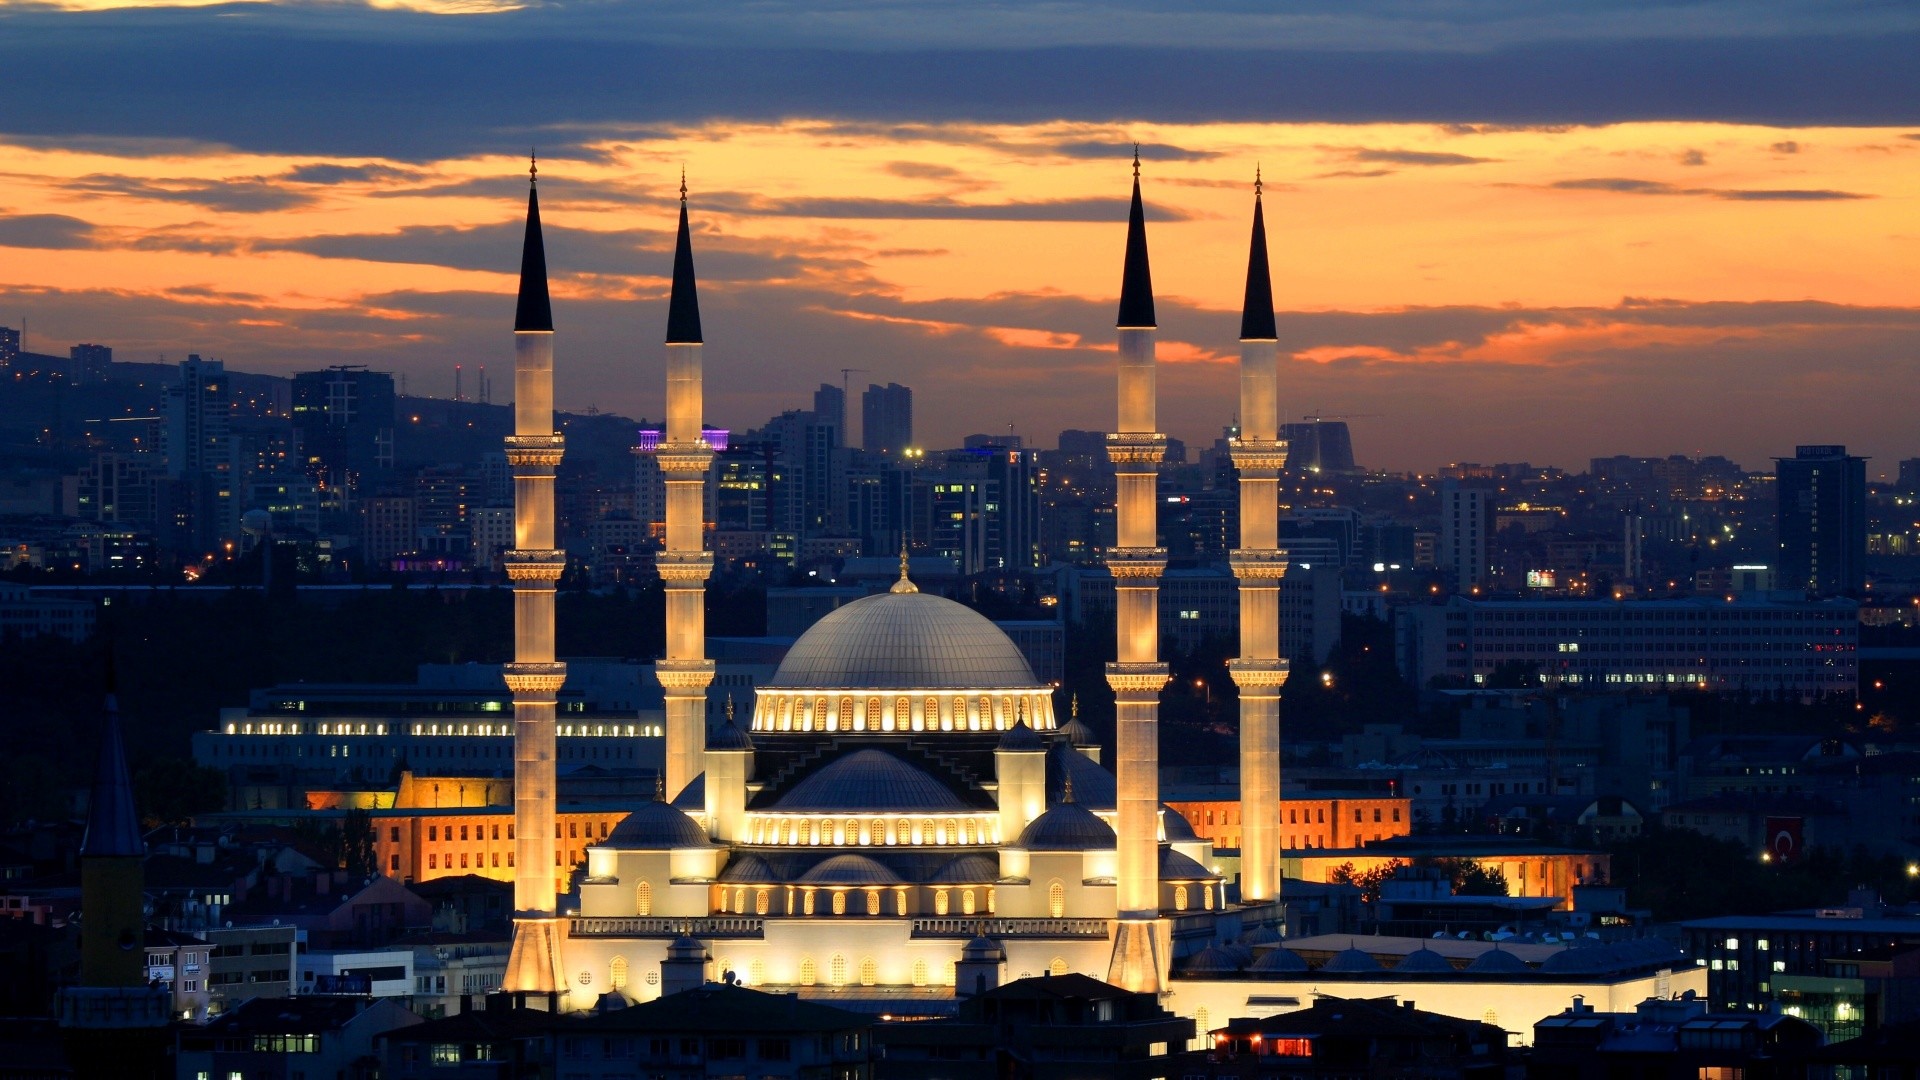 عاصمة تركيا